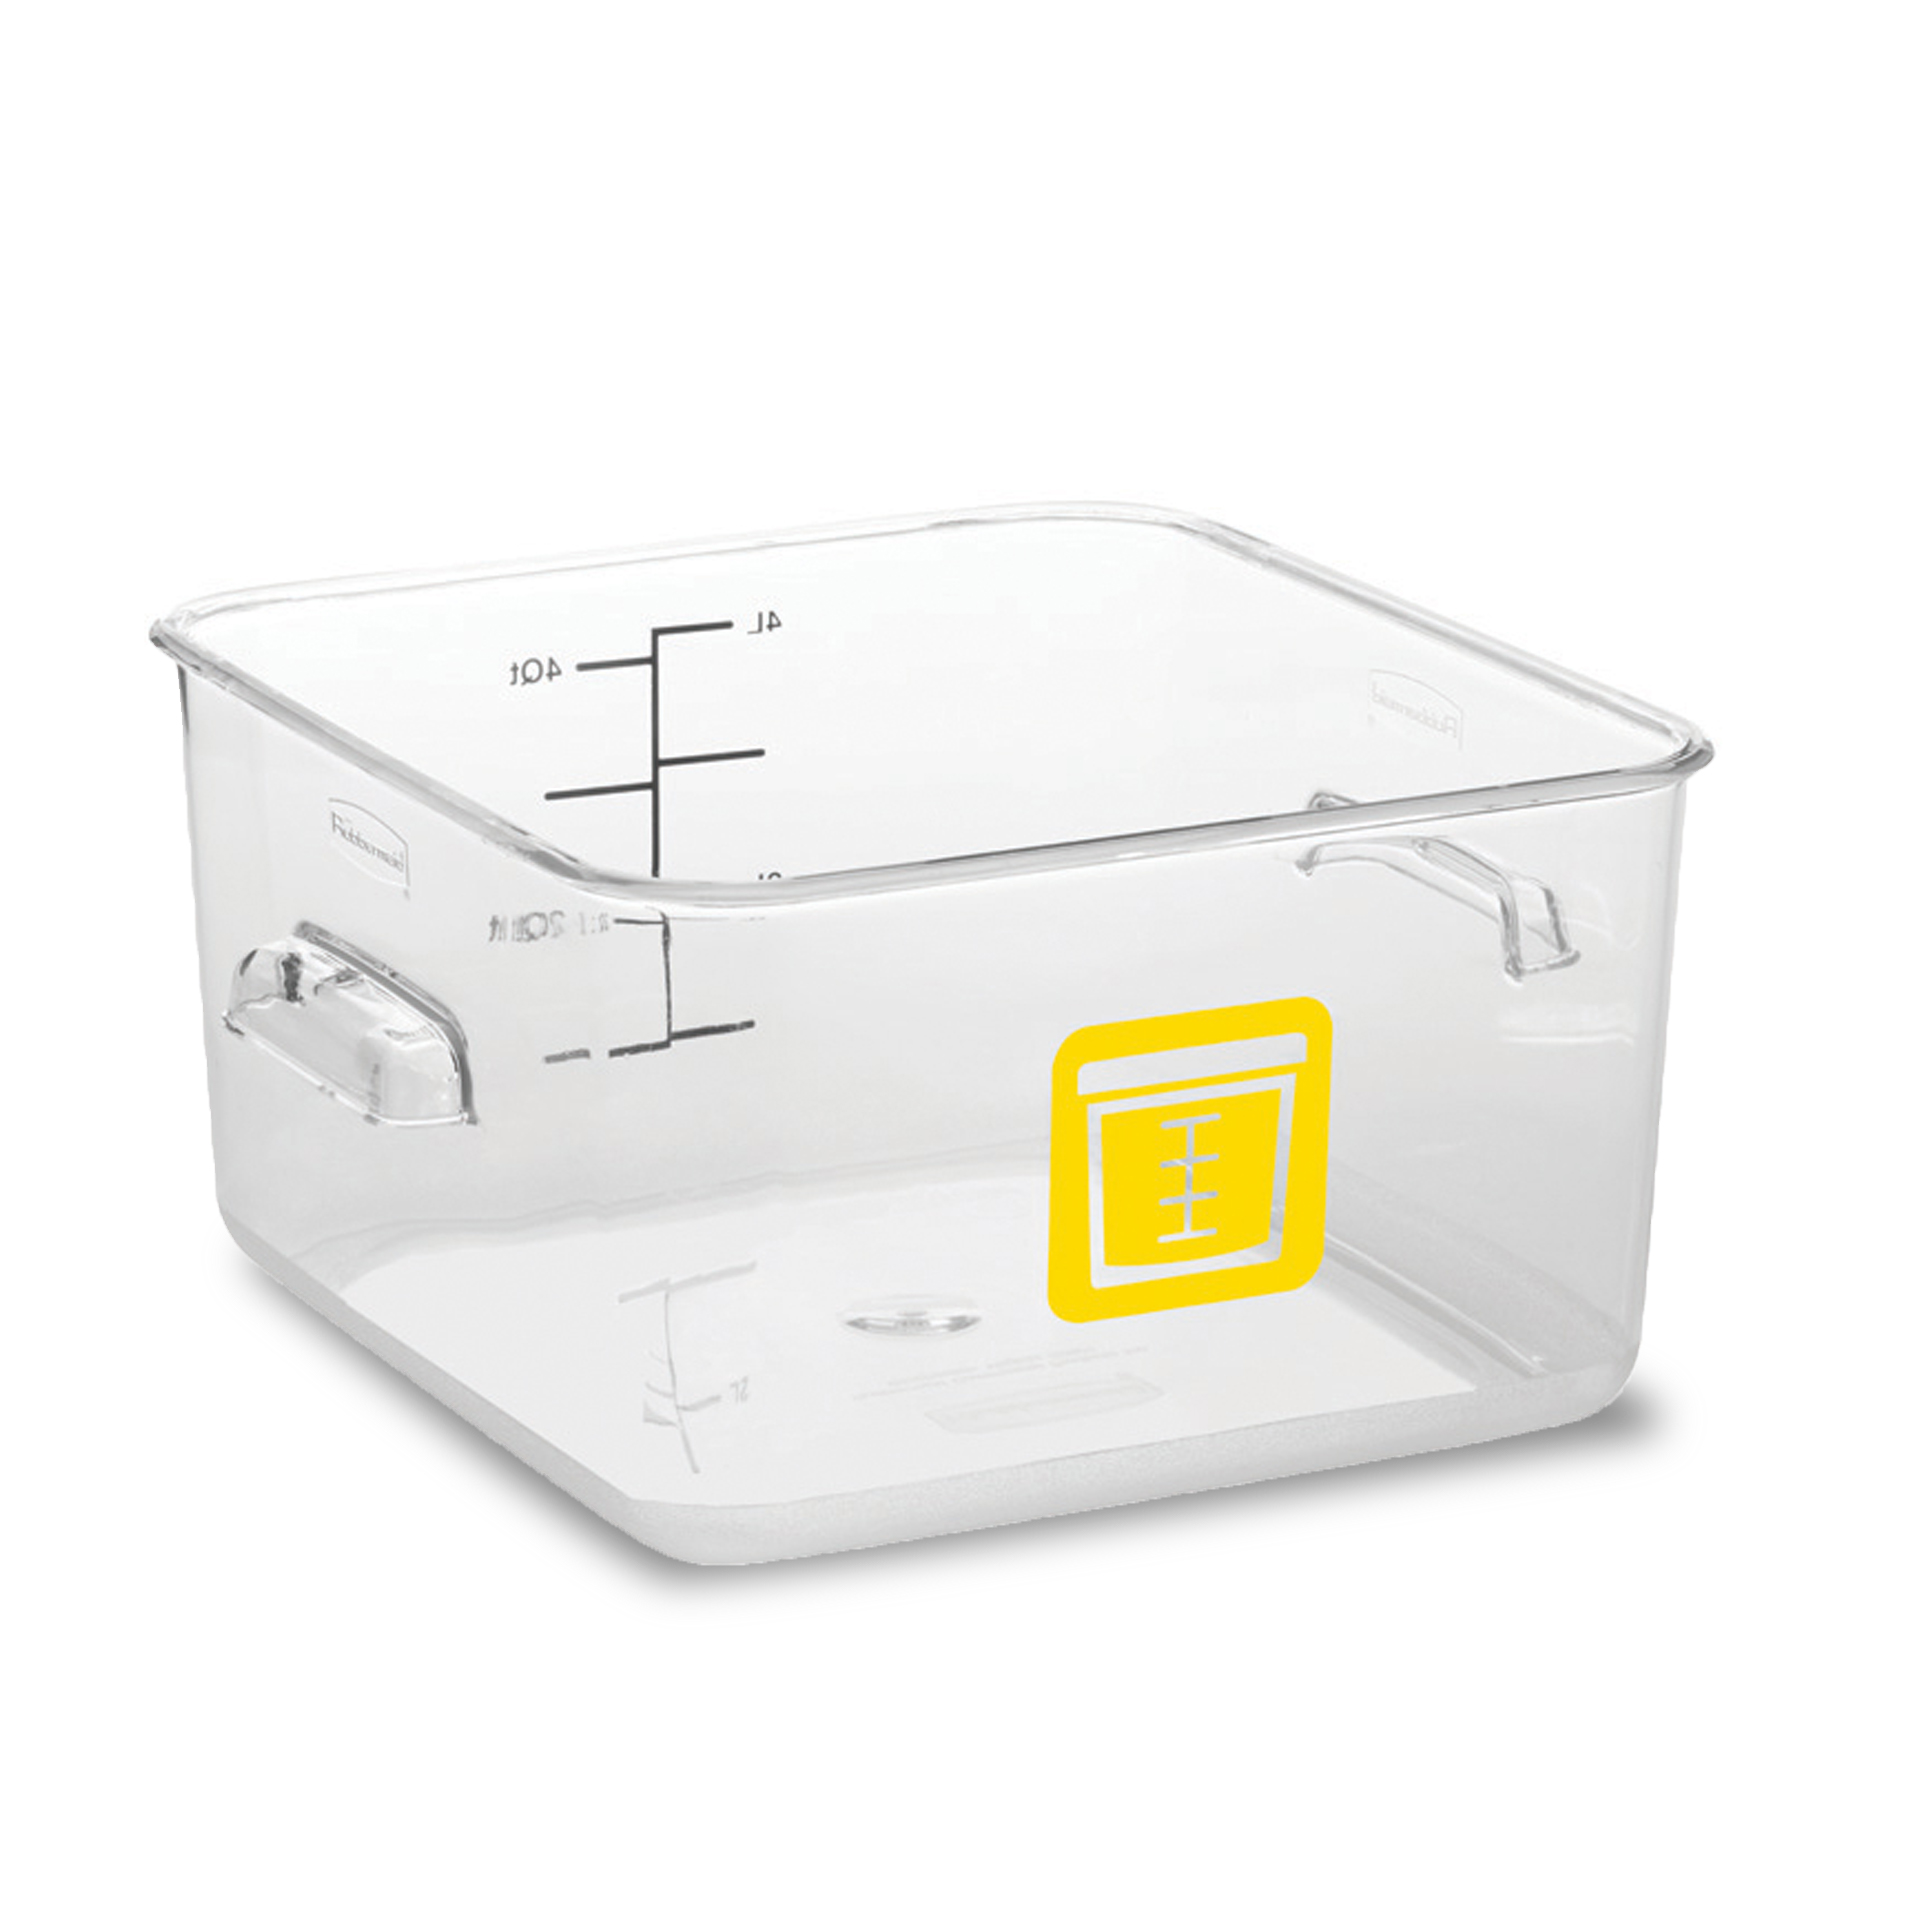 กล่องเก็บวัตถุดิบอาหารสี่เหลี่ยม Color-Coded Square Container Clear ขนาด 4 qt สีเหลือง